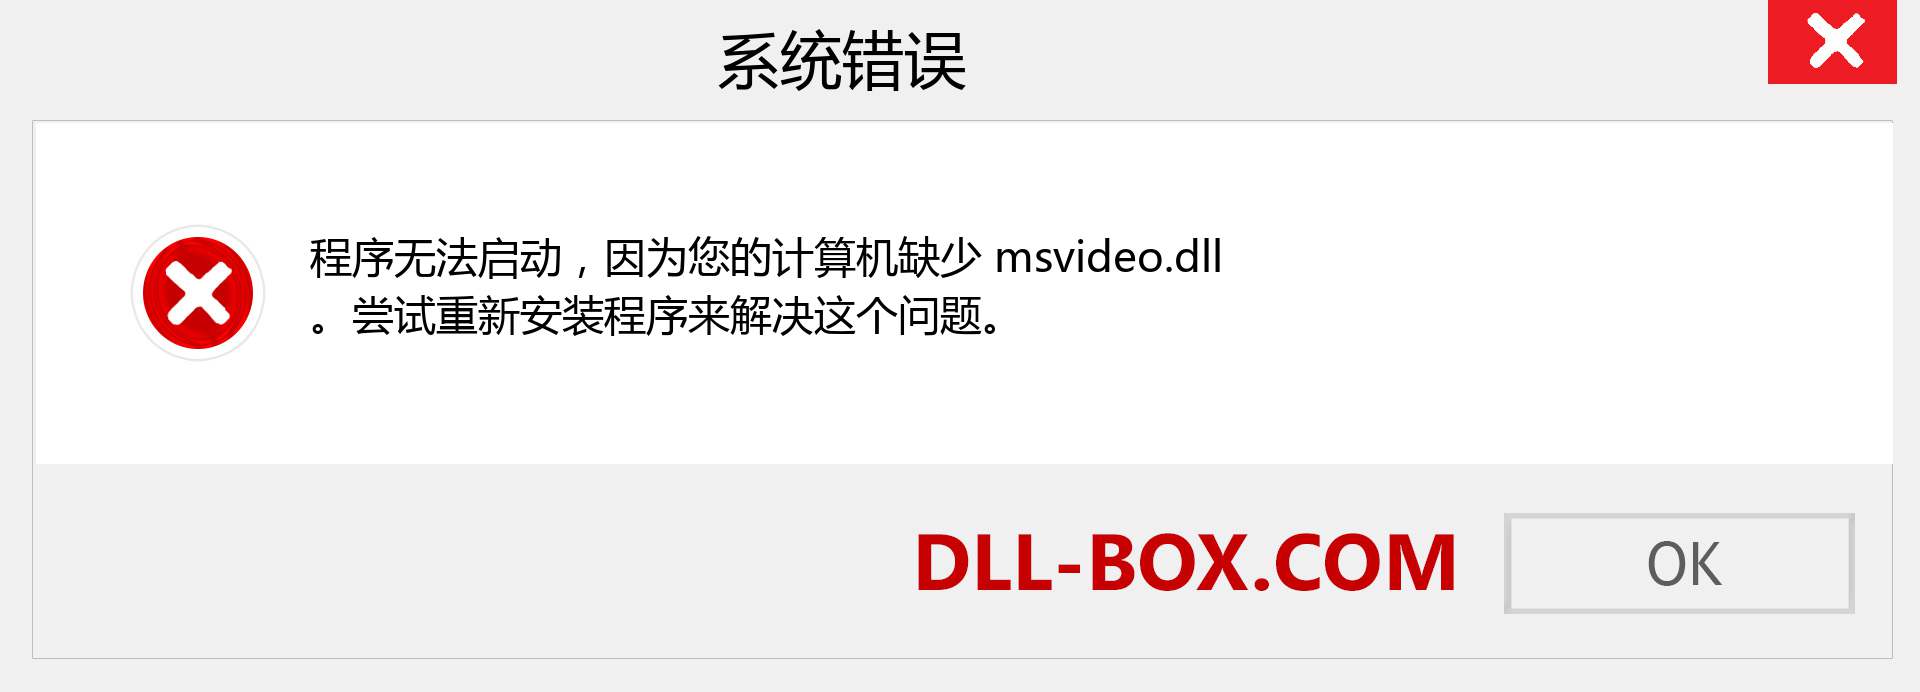 msvideo.dll 文件丢失？。 适用于 Windows 7、8、10 的下载 - 修复 Windows、照片、图像上的 msvideo dll 丢失错误